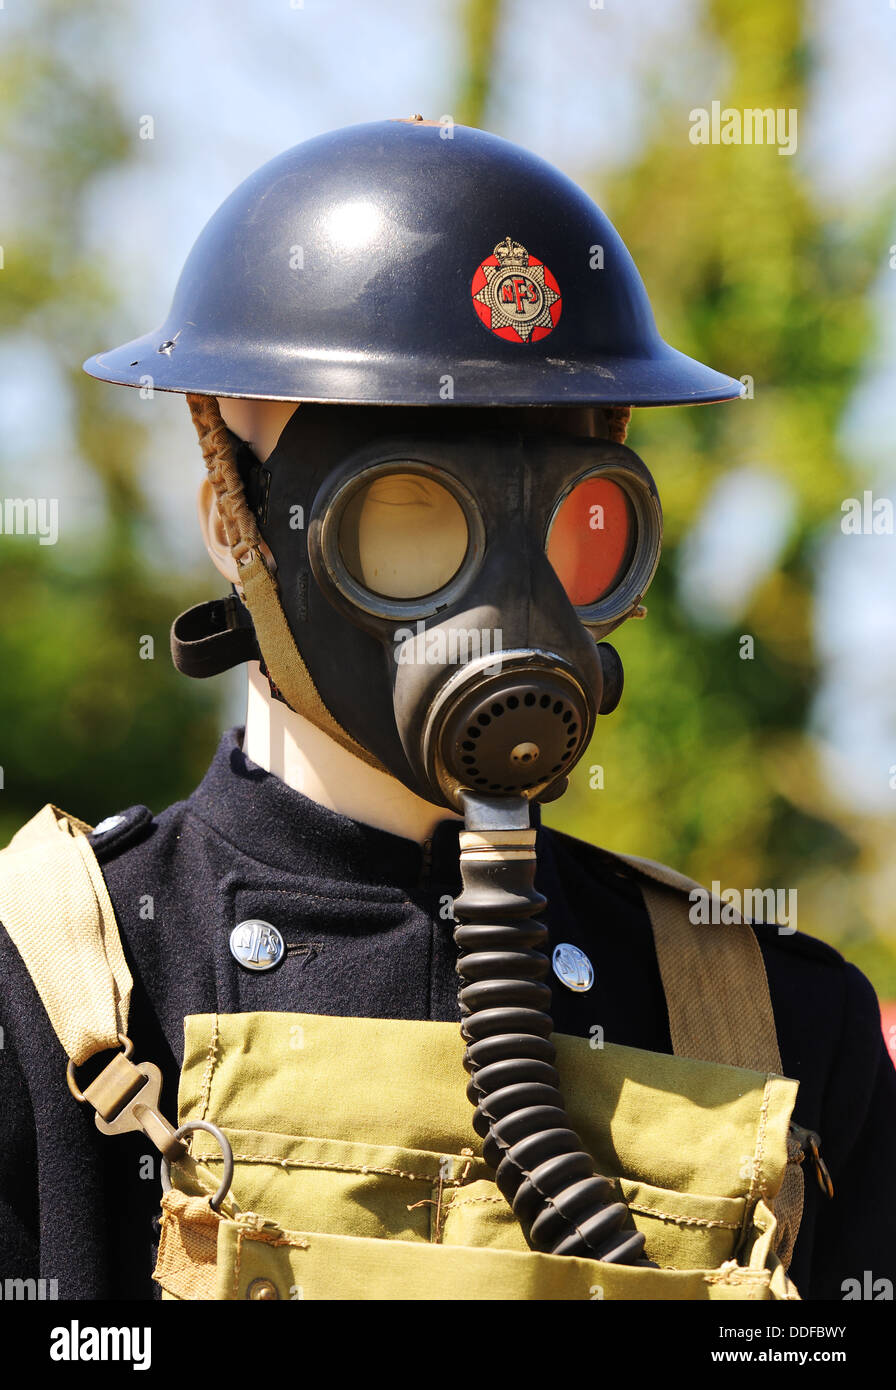 Servicio Nacional de Bomberos, NFS, la segunda guerra mundial uniforme y máscara de gas Foto de stock